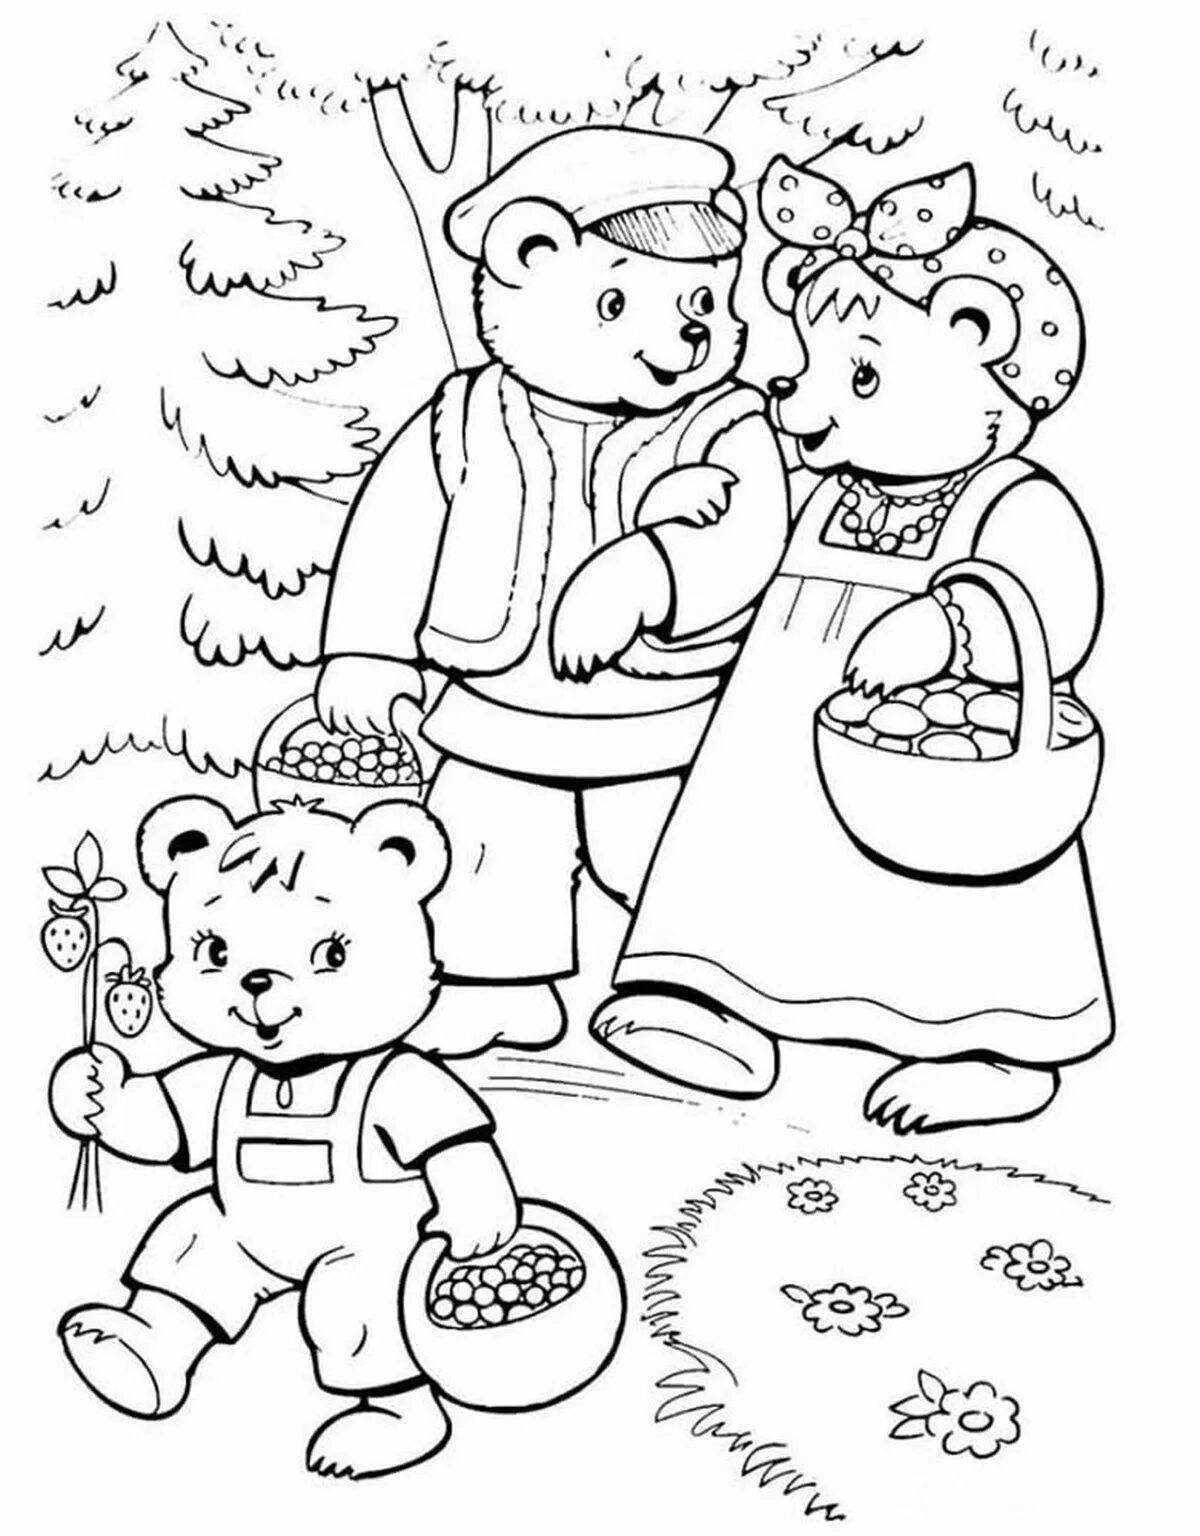 Fantastic bear coloring book